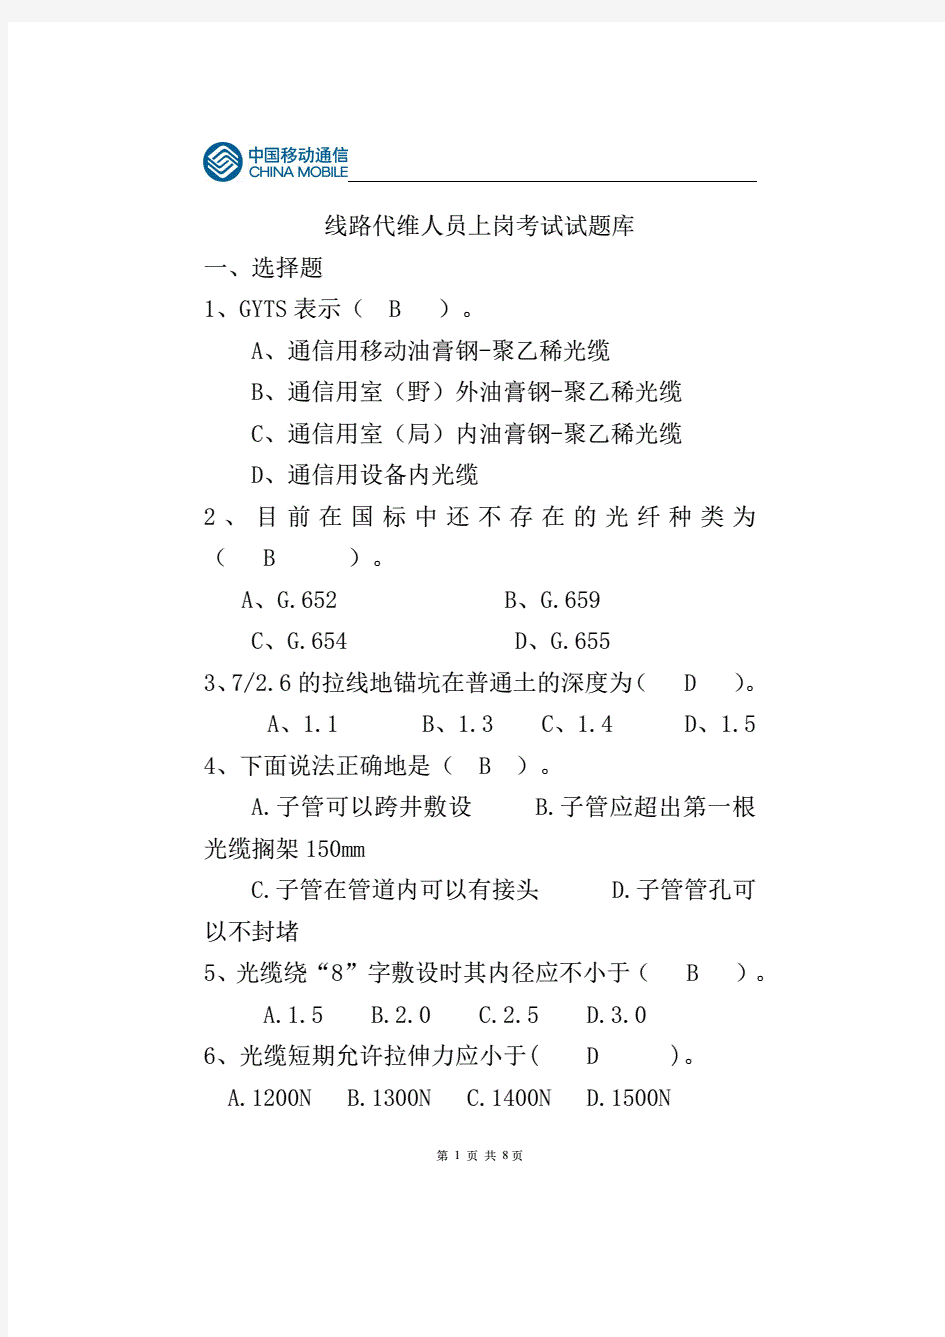 中国移动通信线路代维人员上岗考试试题库及答案